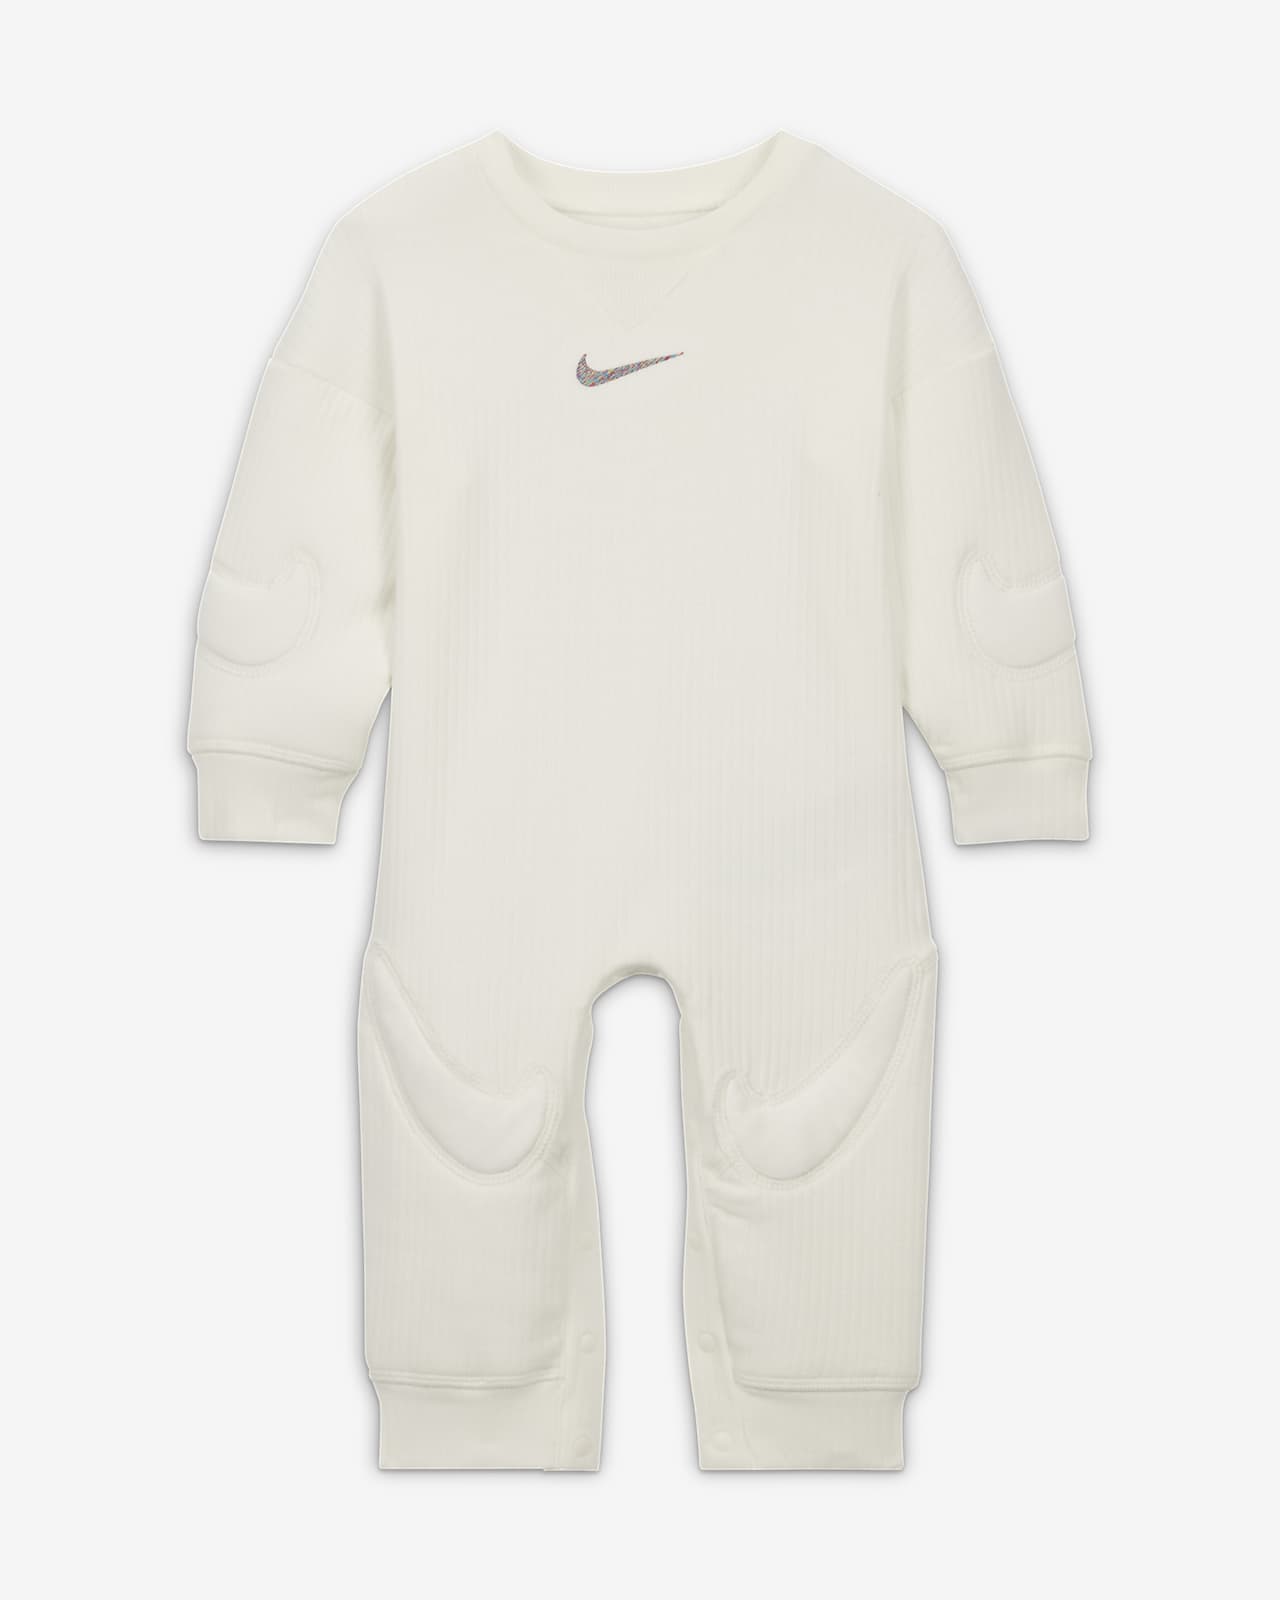 Combinaison Nike « Ready, Set » pour bébé